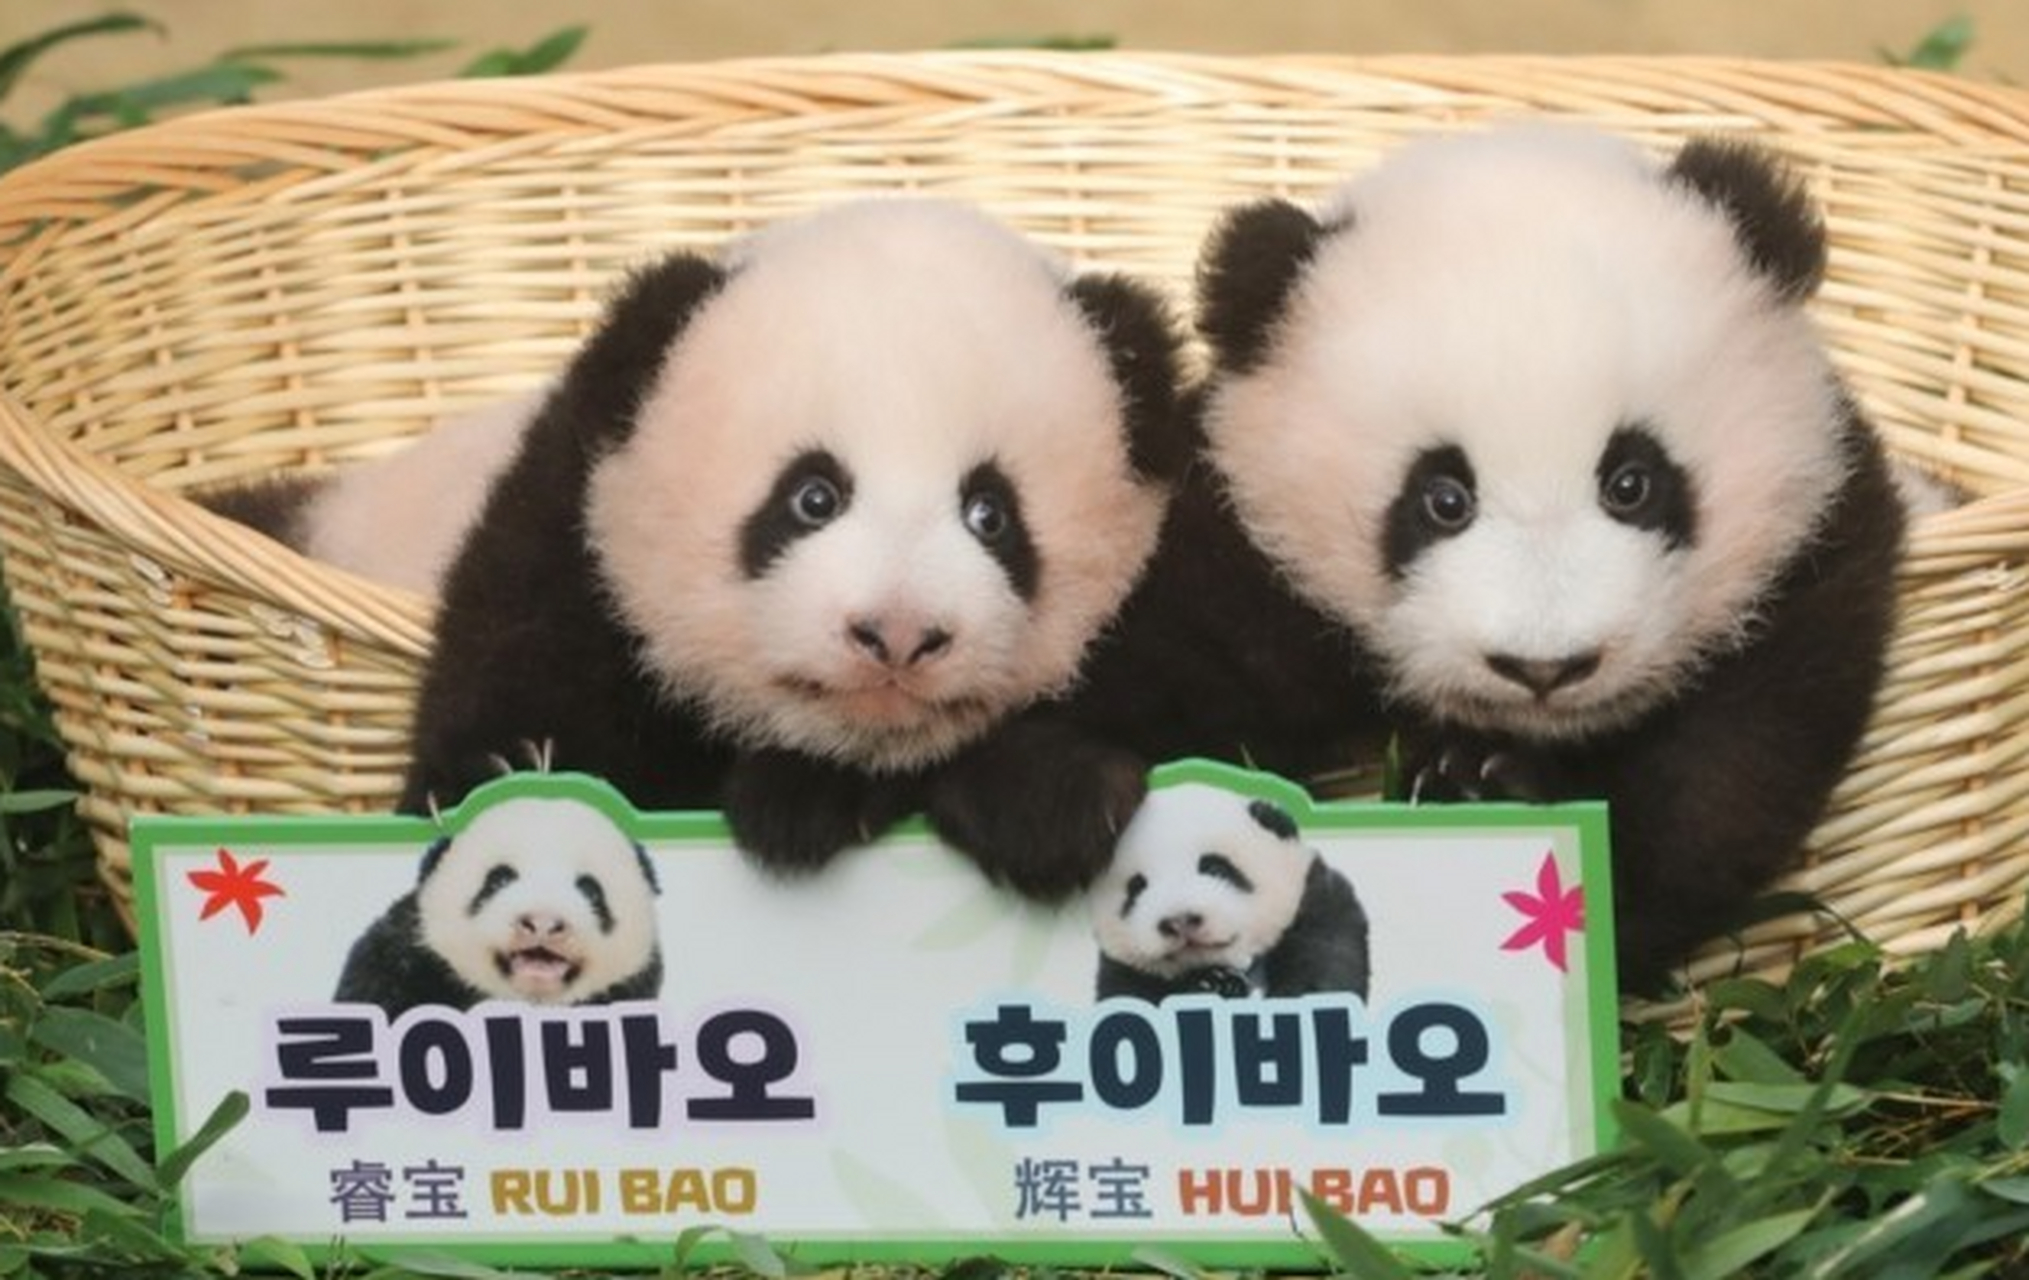 大熊猫福宝双胞胎妹妹名字正式出炉,叫睿宝和辉宝  福宝是在韩国